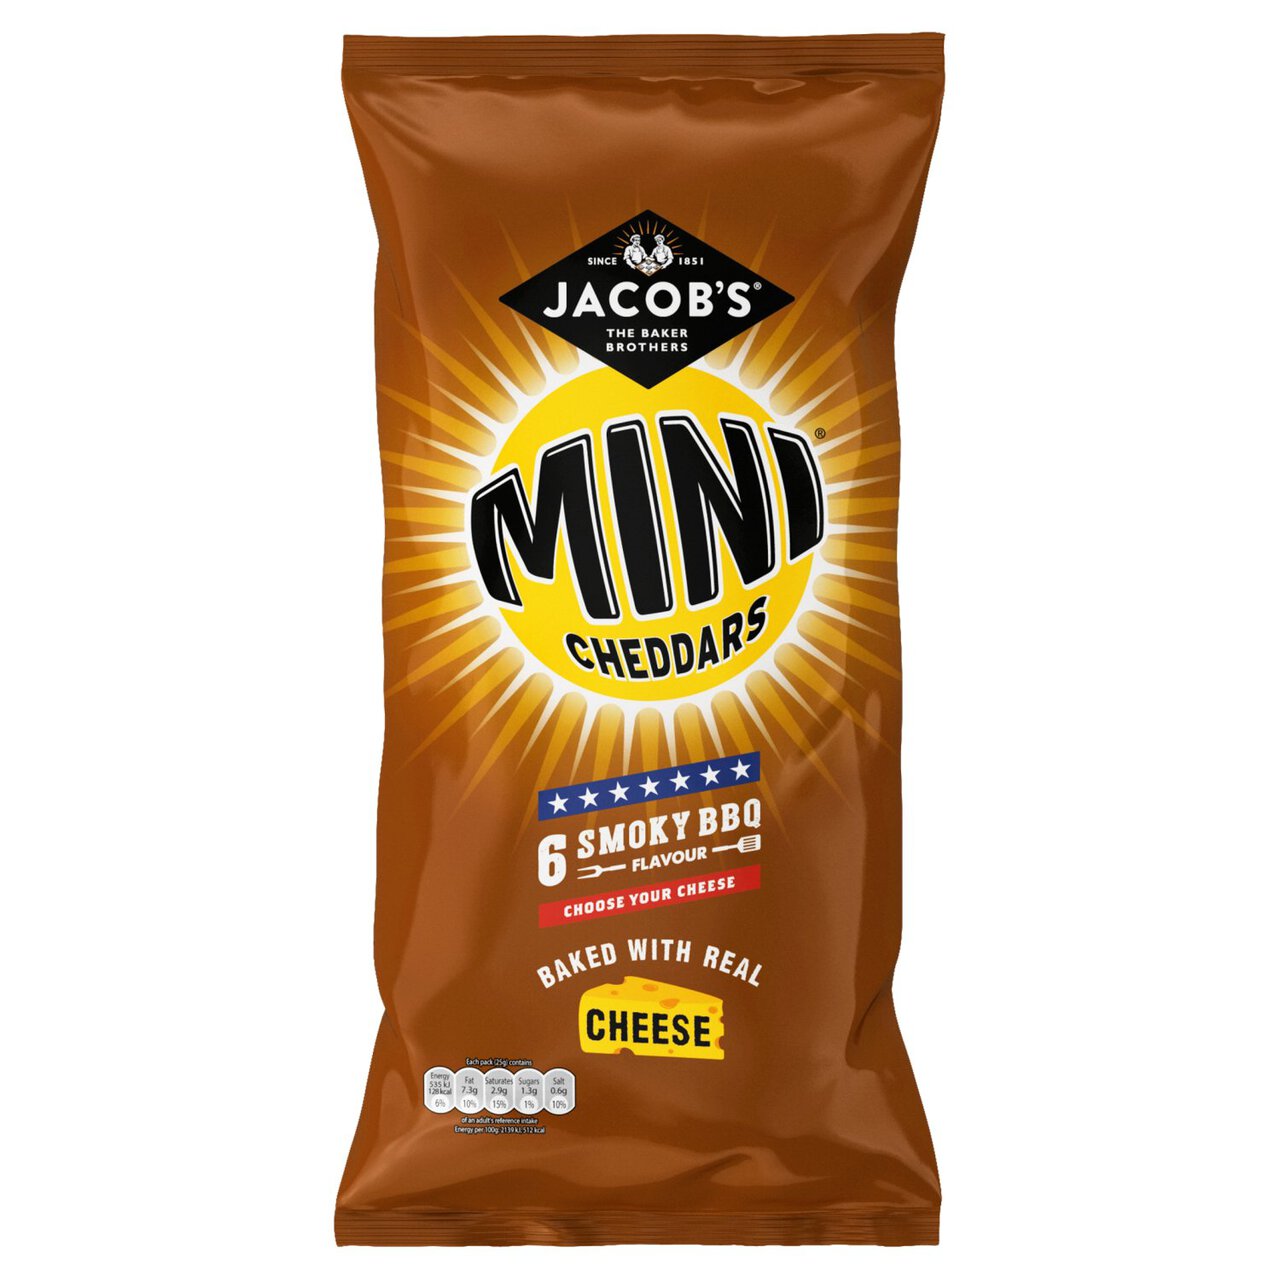 Jacob's Mini Cheddars BBQ 23 per pack